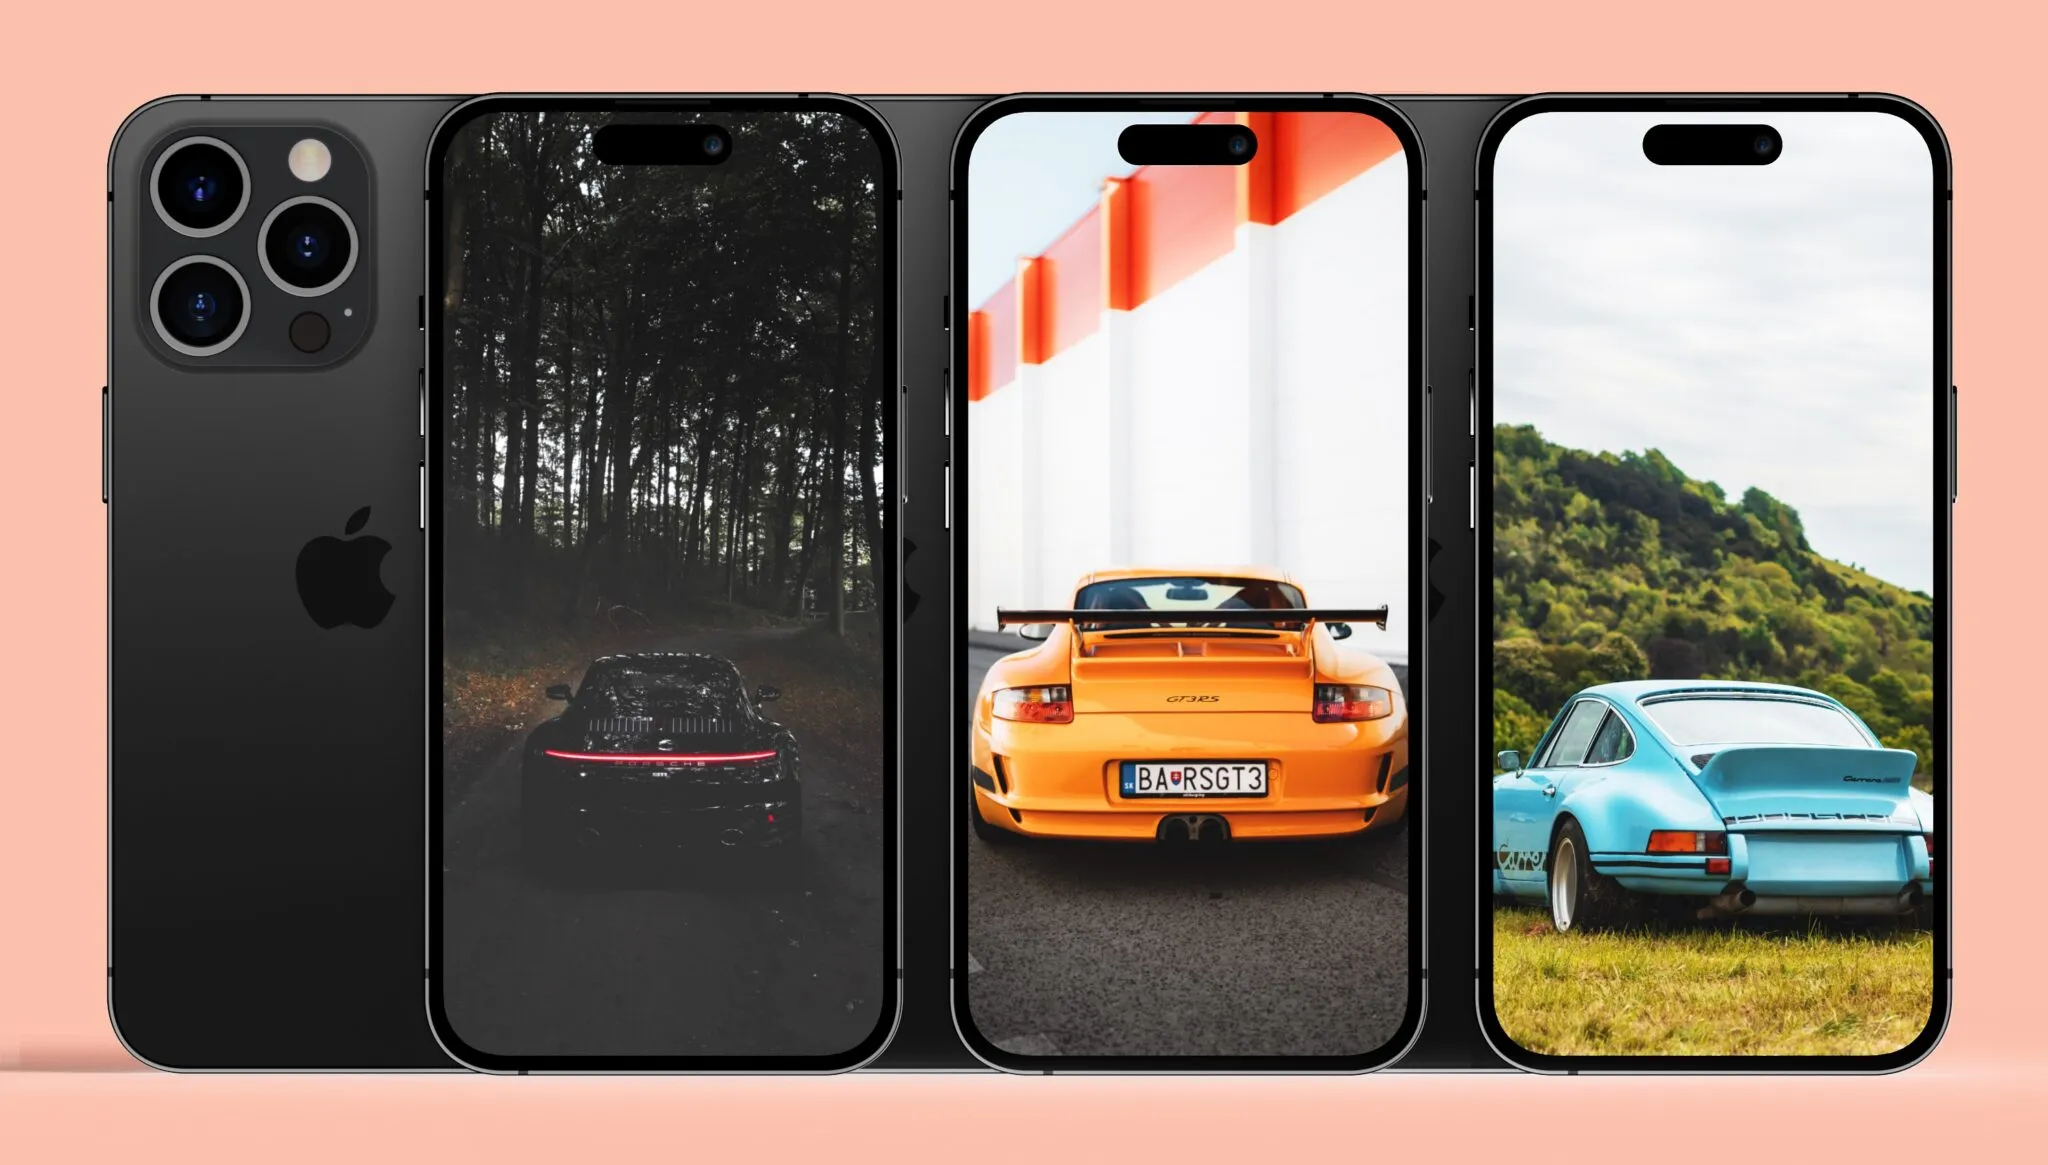 Hình nền đẹp và chất lượng cao cho iPhone chủ đề xe Porsche 911